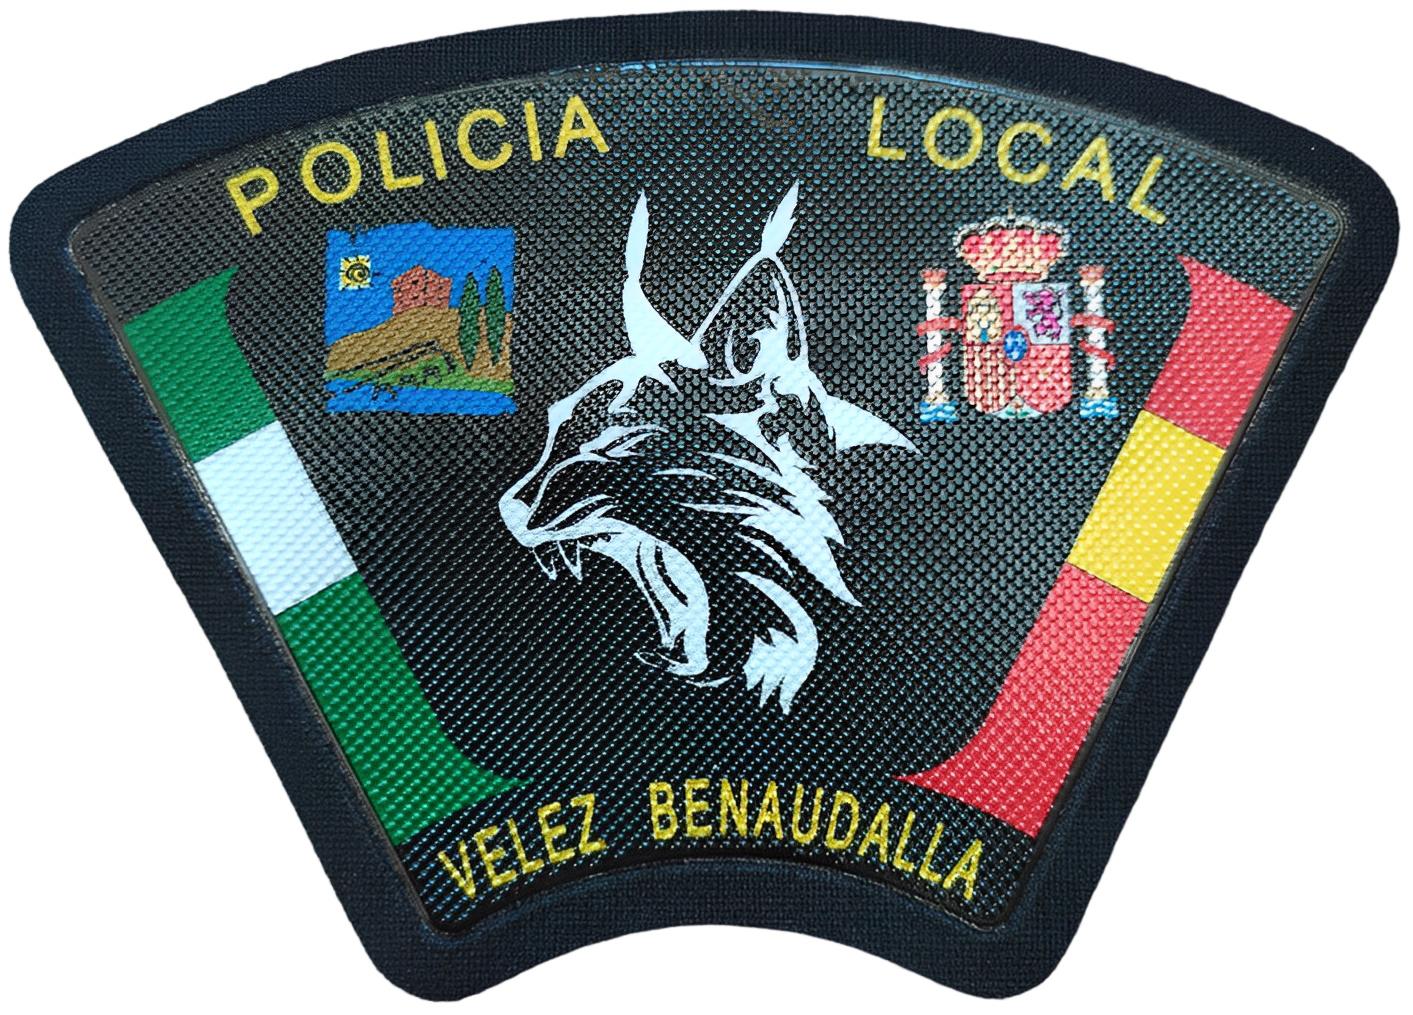 Policía Local Vélez Benaudalla Granada Andalucía parche insignia emblema distintivo